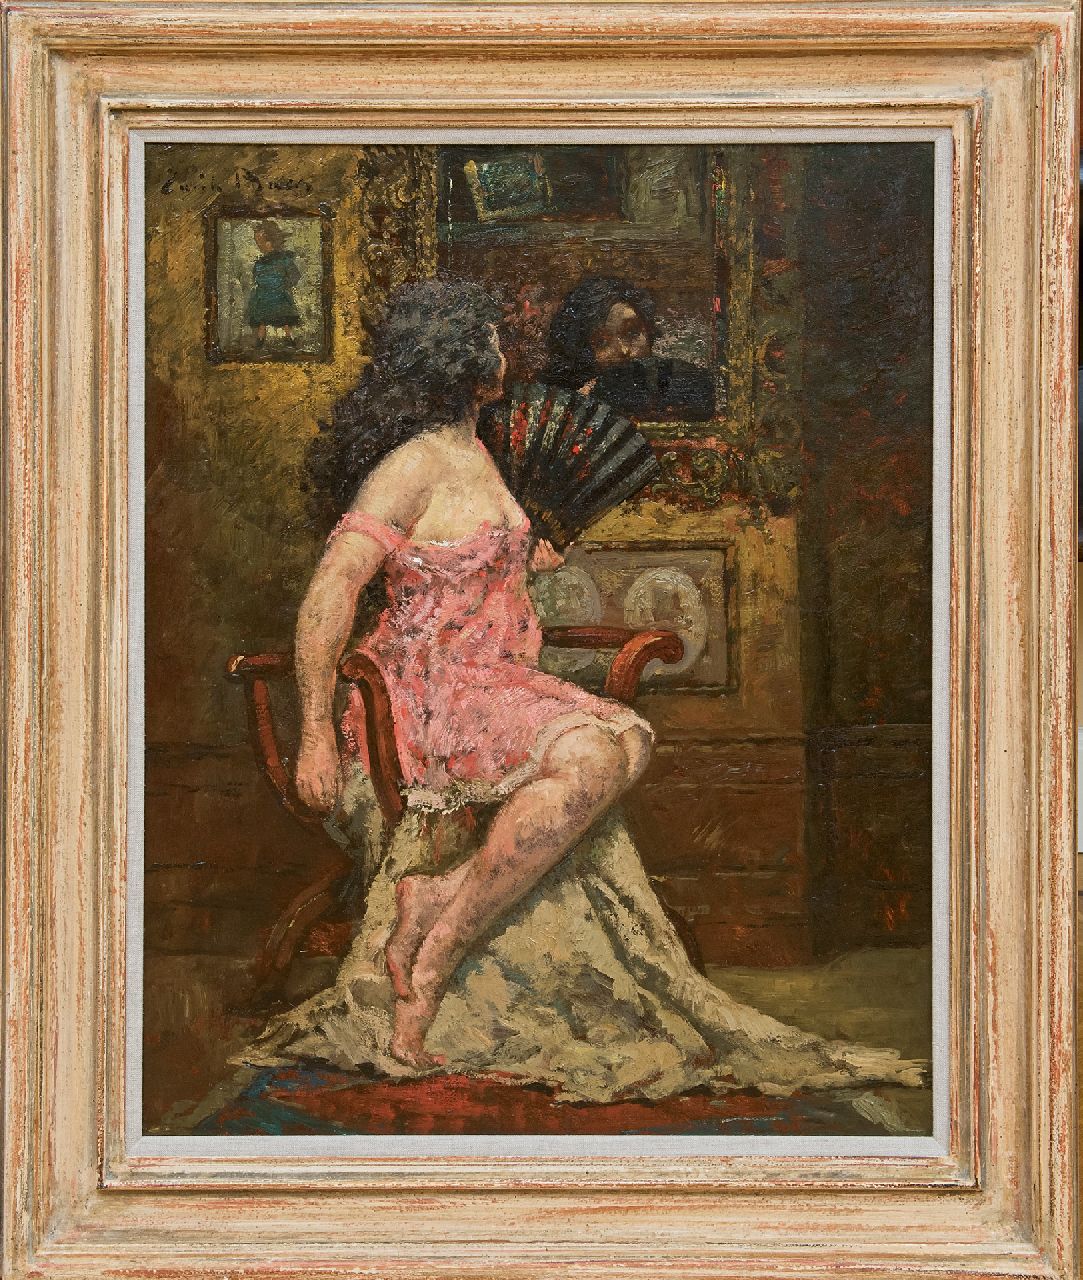 Baes E.  | Emile Baes | Schilderijen te koop aangeboden | De Spaanse waaier, olieverf op doek 70,7 x 56,1 cm, gesigneerd linksboven